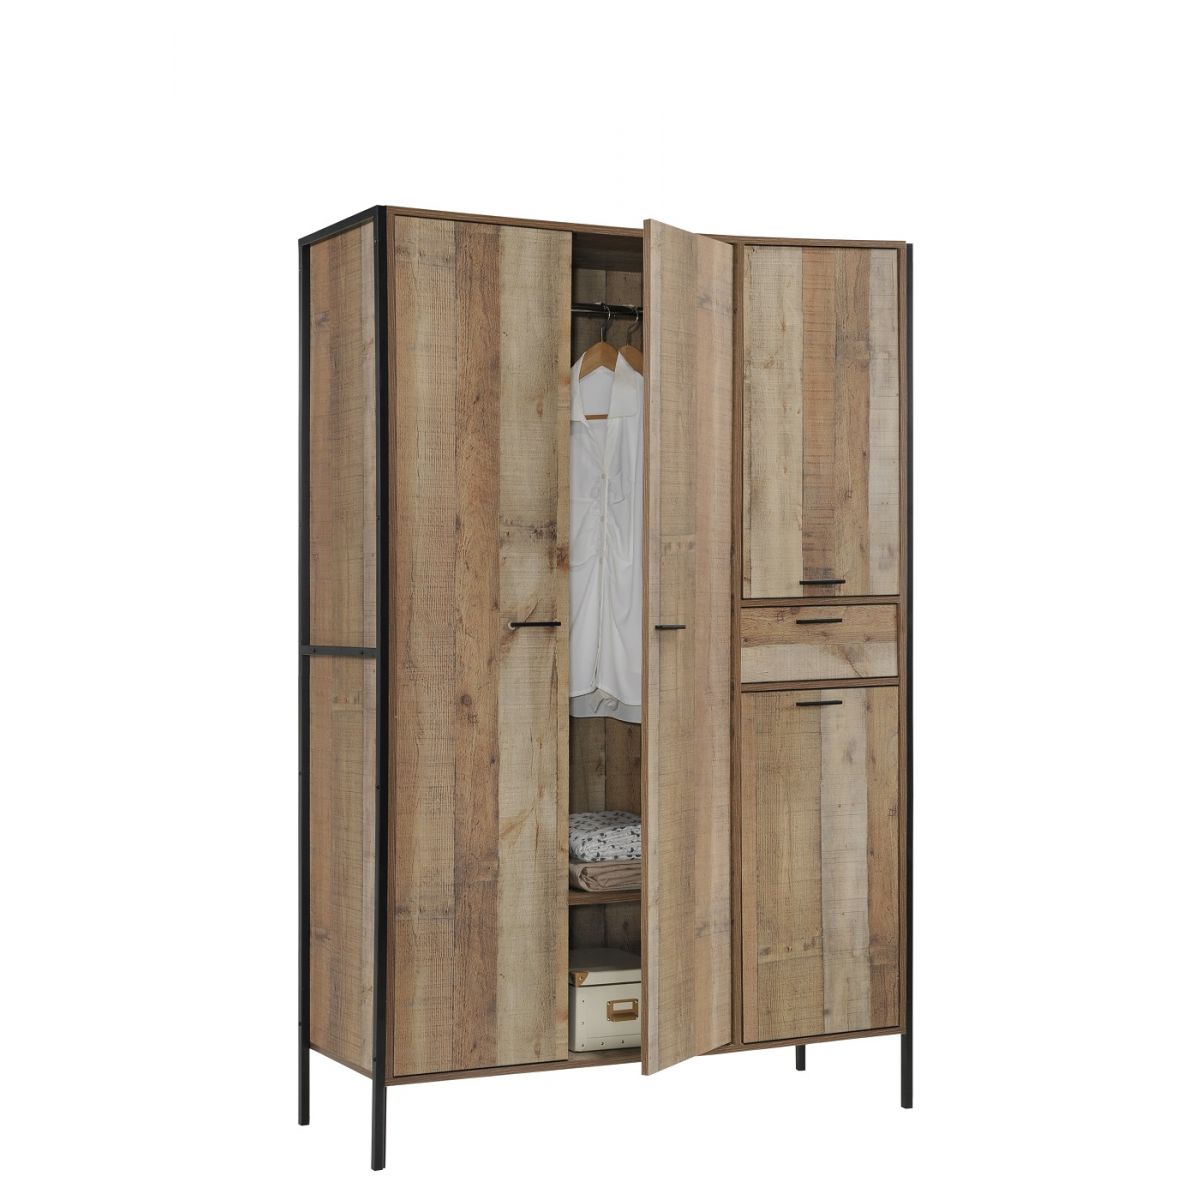 Möbel & Wohnen Stretton Sideboard Storage Cupboard Cabinet 3 Doors